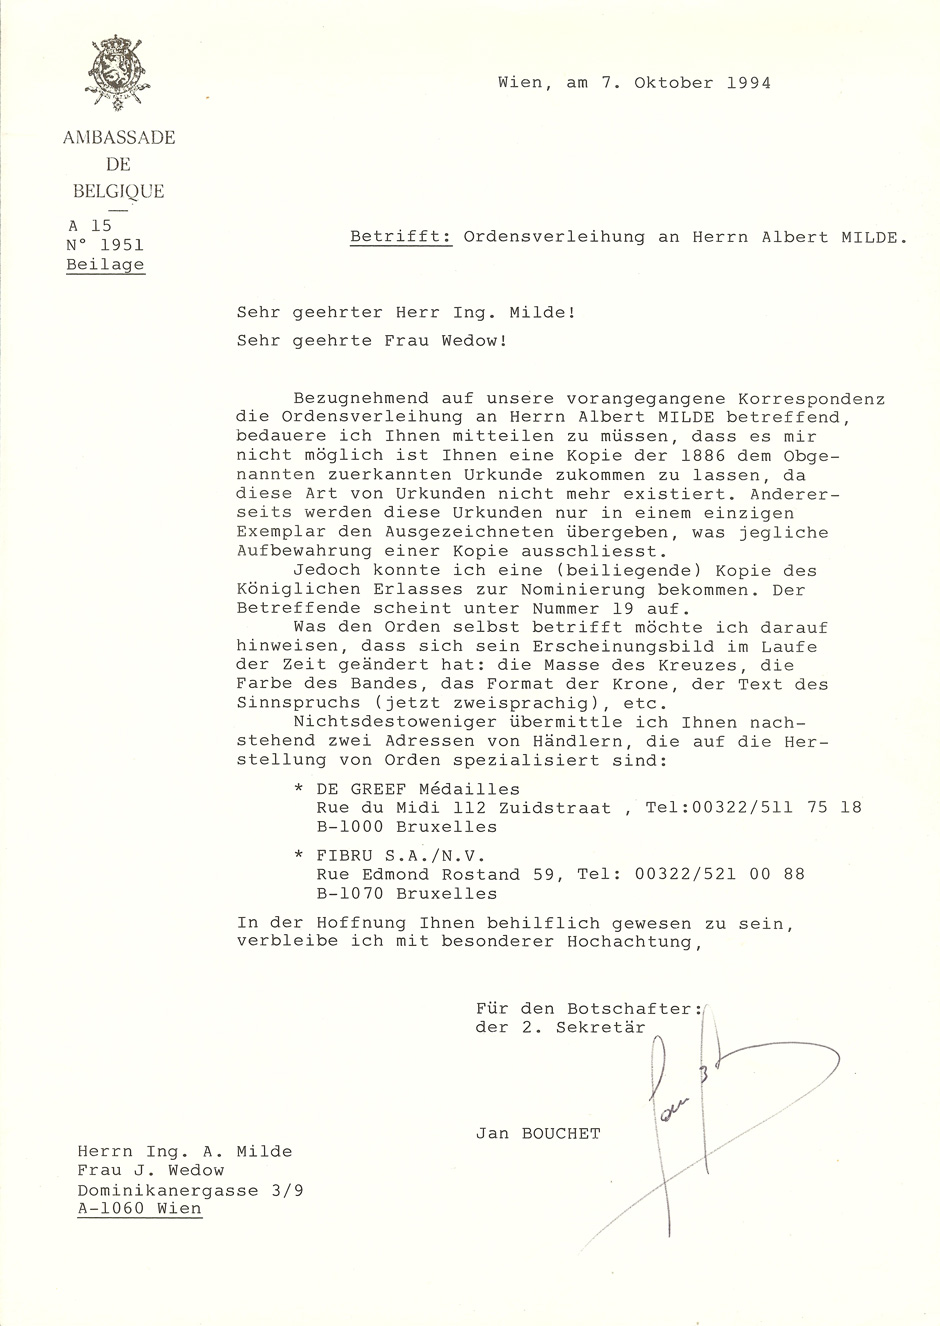 Letter Ambassade de Belgigue 7.10.1994